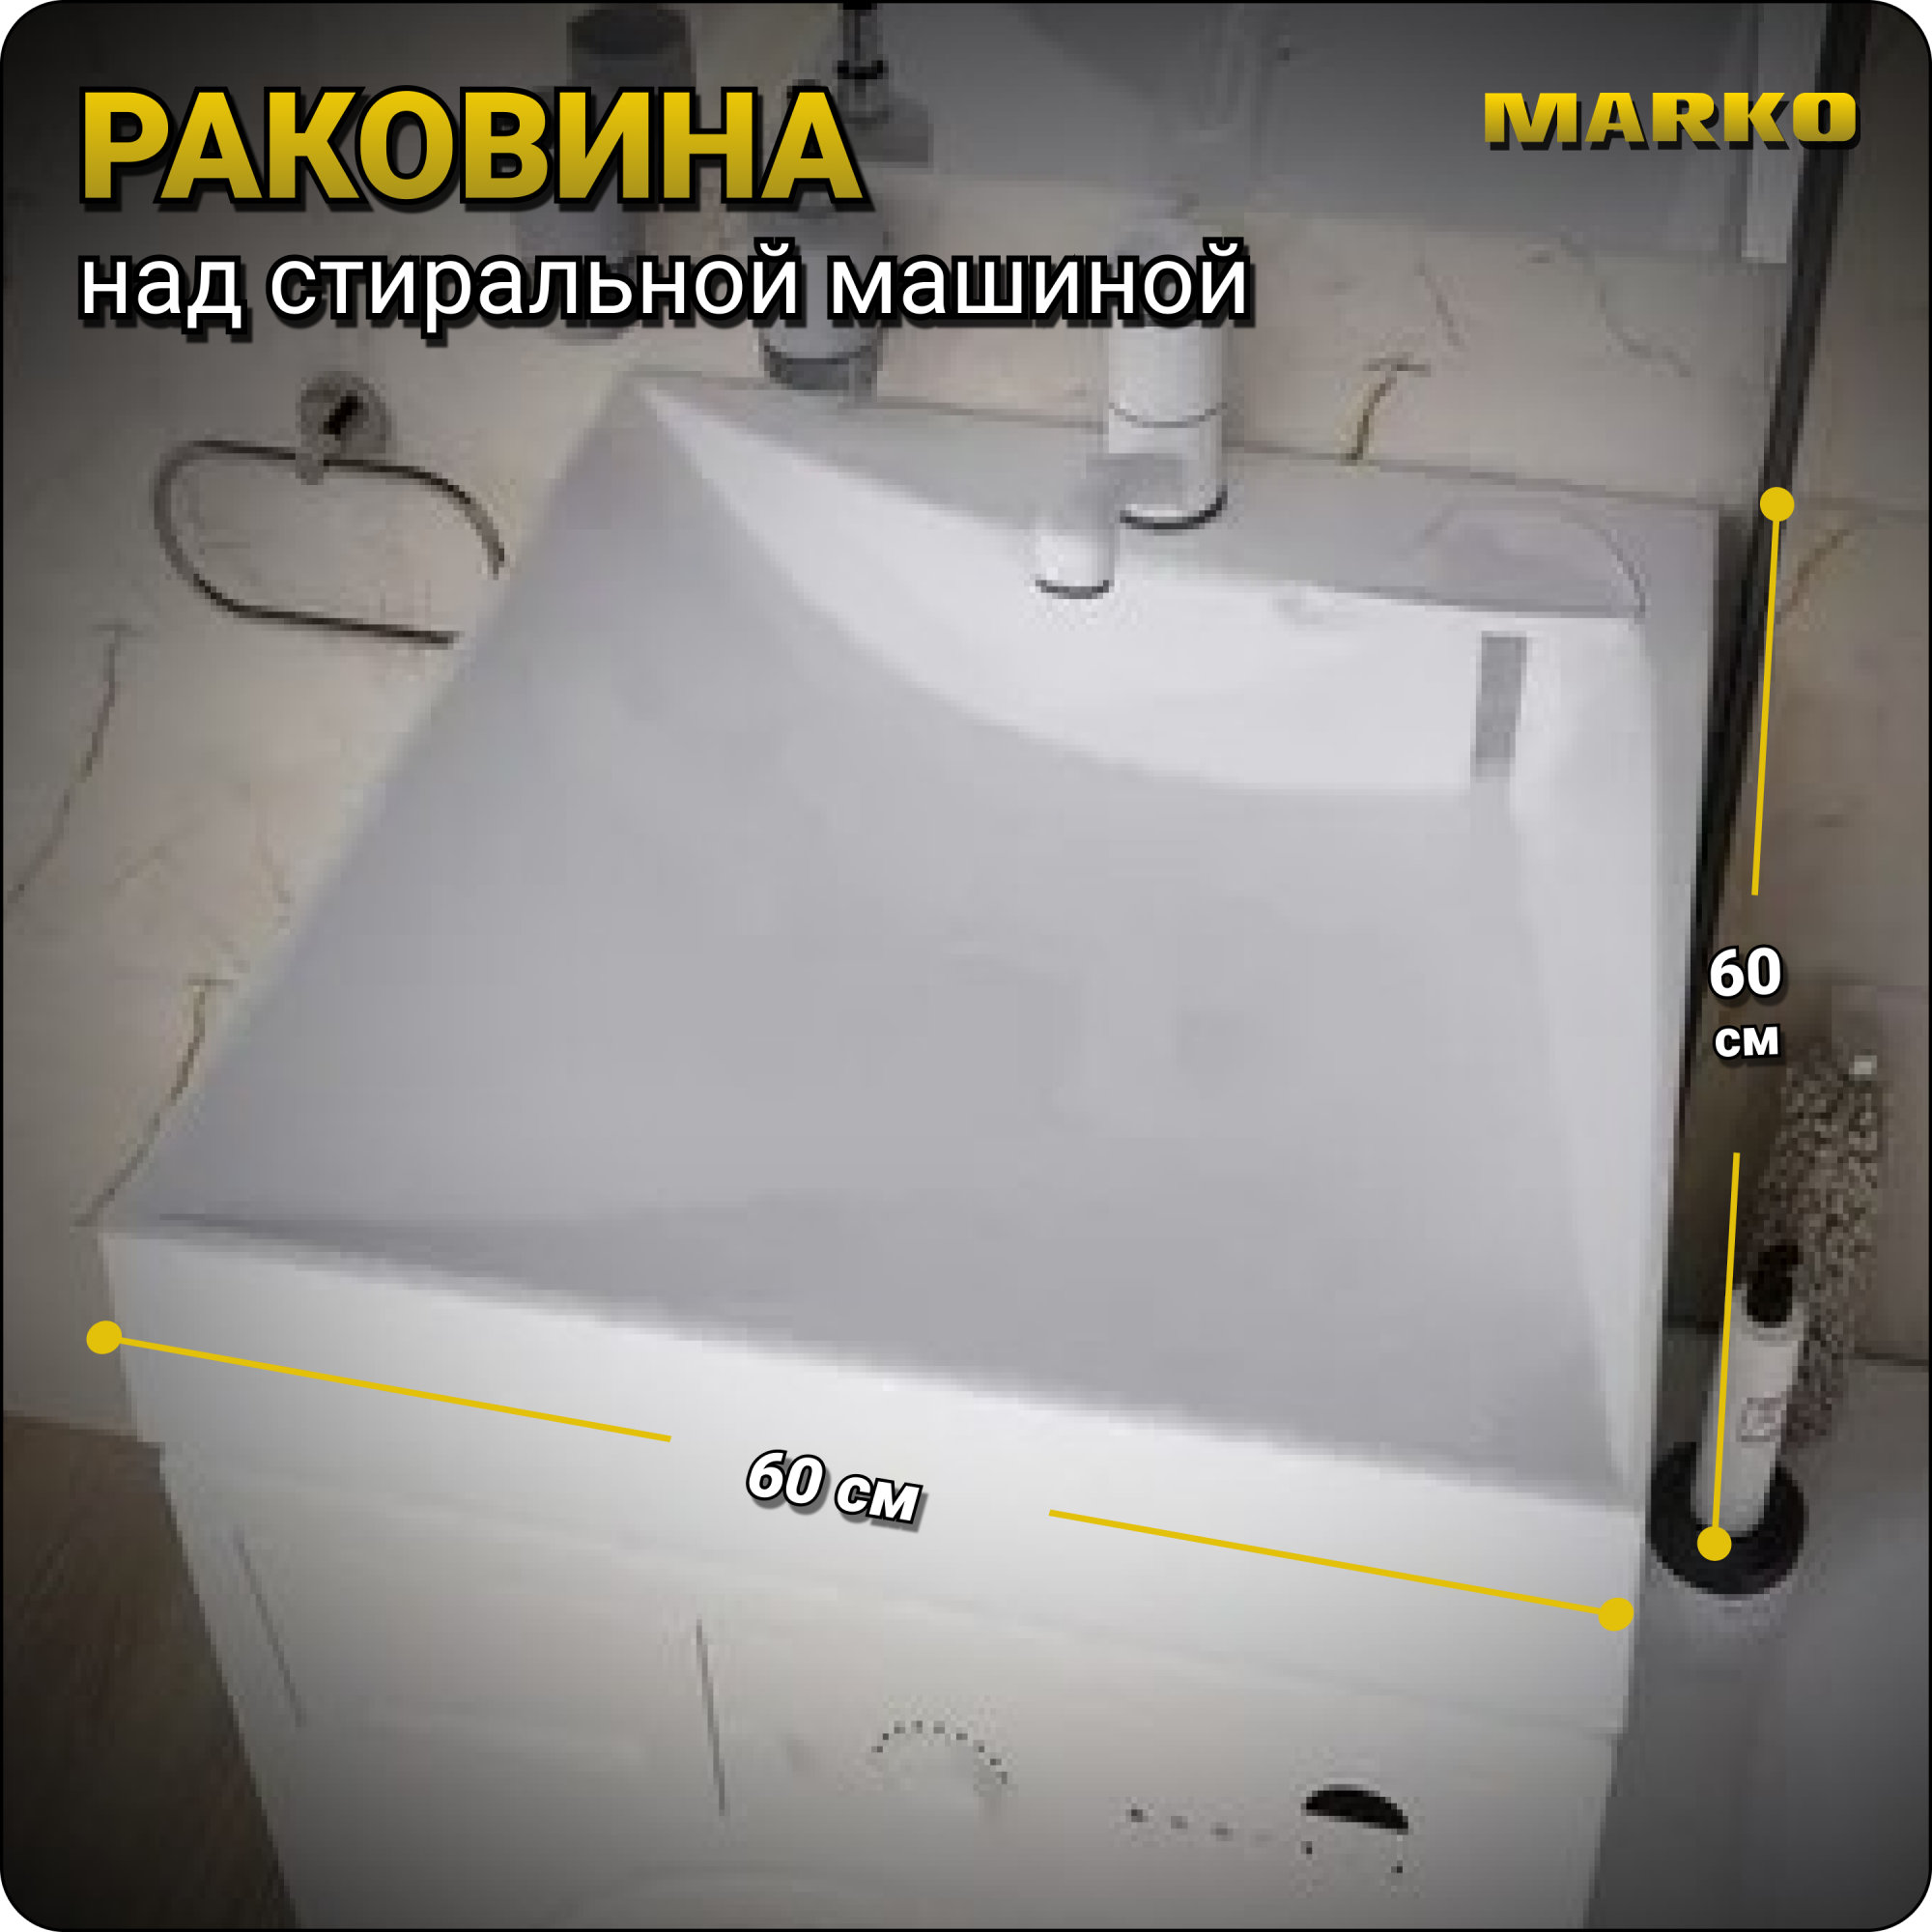 Раковина в ванную Marko Твист 60, 5231500, на стиральную машину, белая - купить в ООО Сан Марко, цена на Мегамаркет